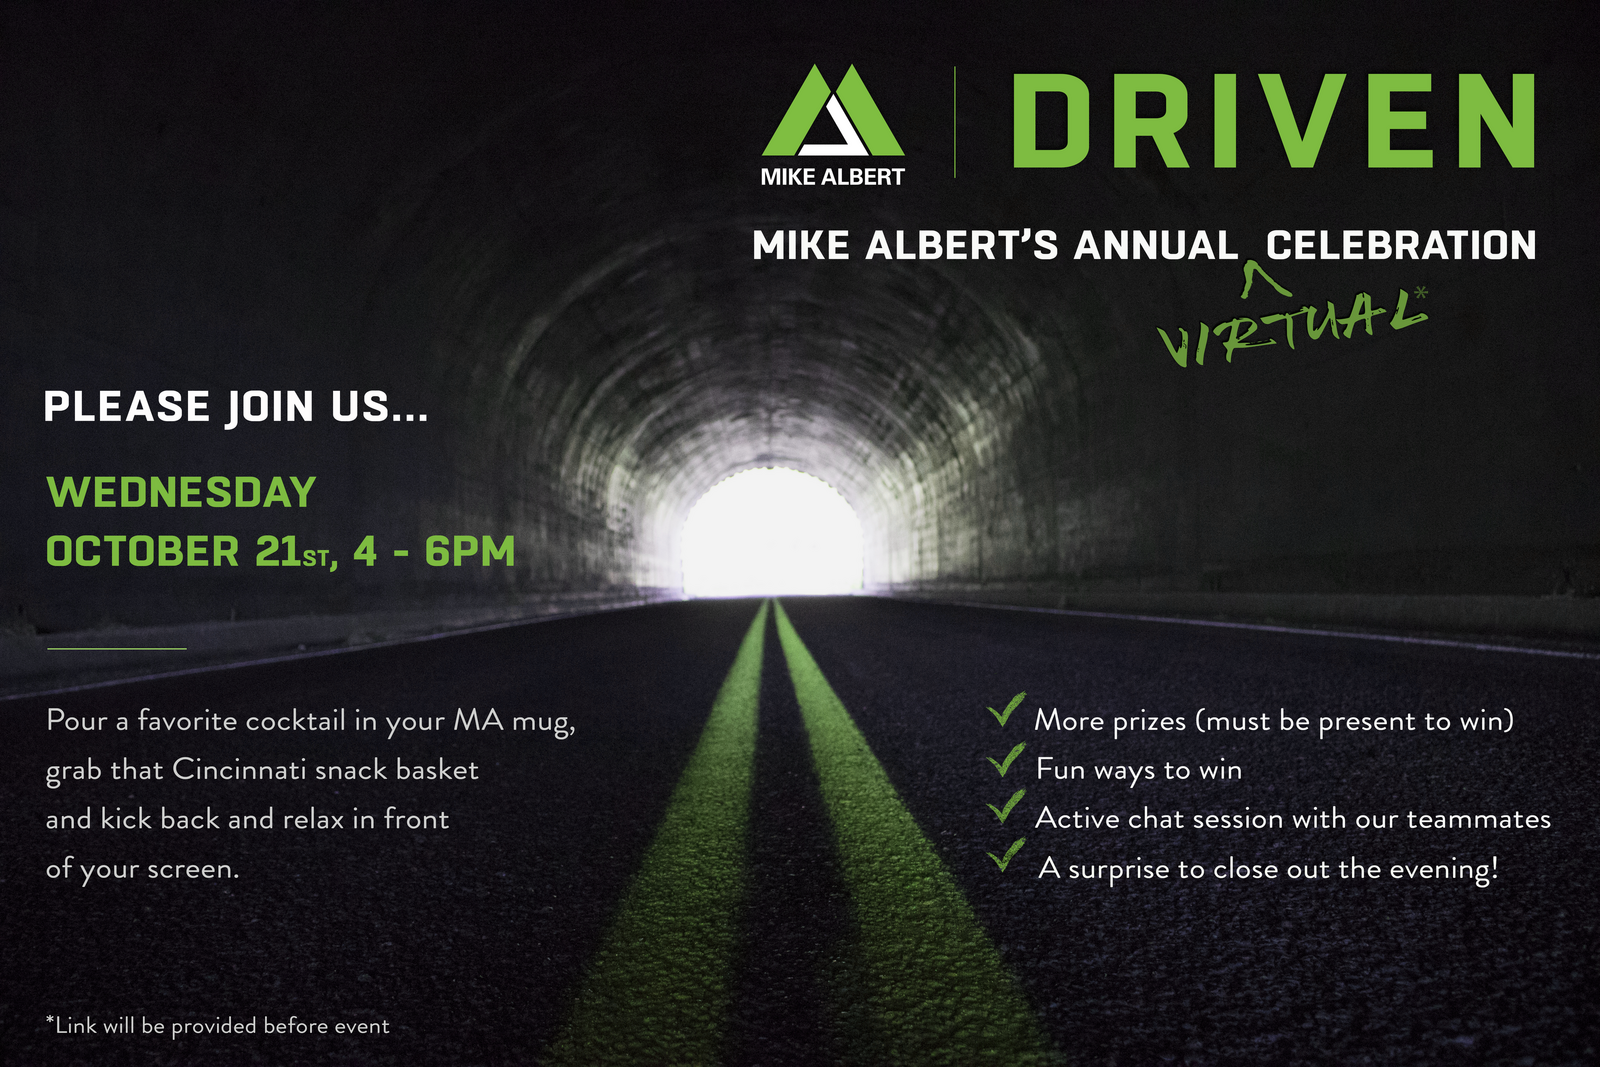 Mike Albert Driven Invitation